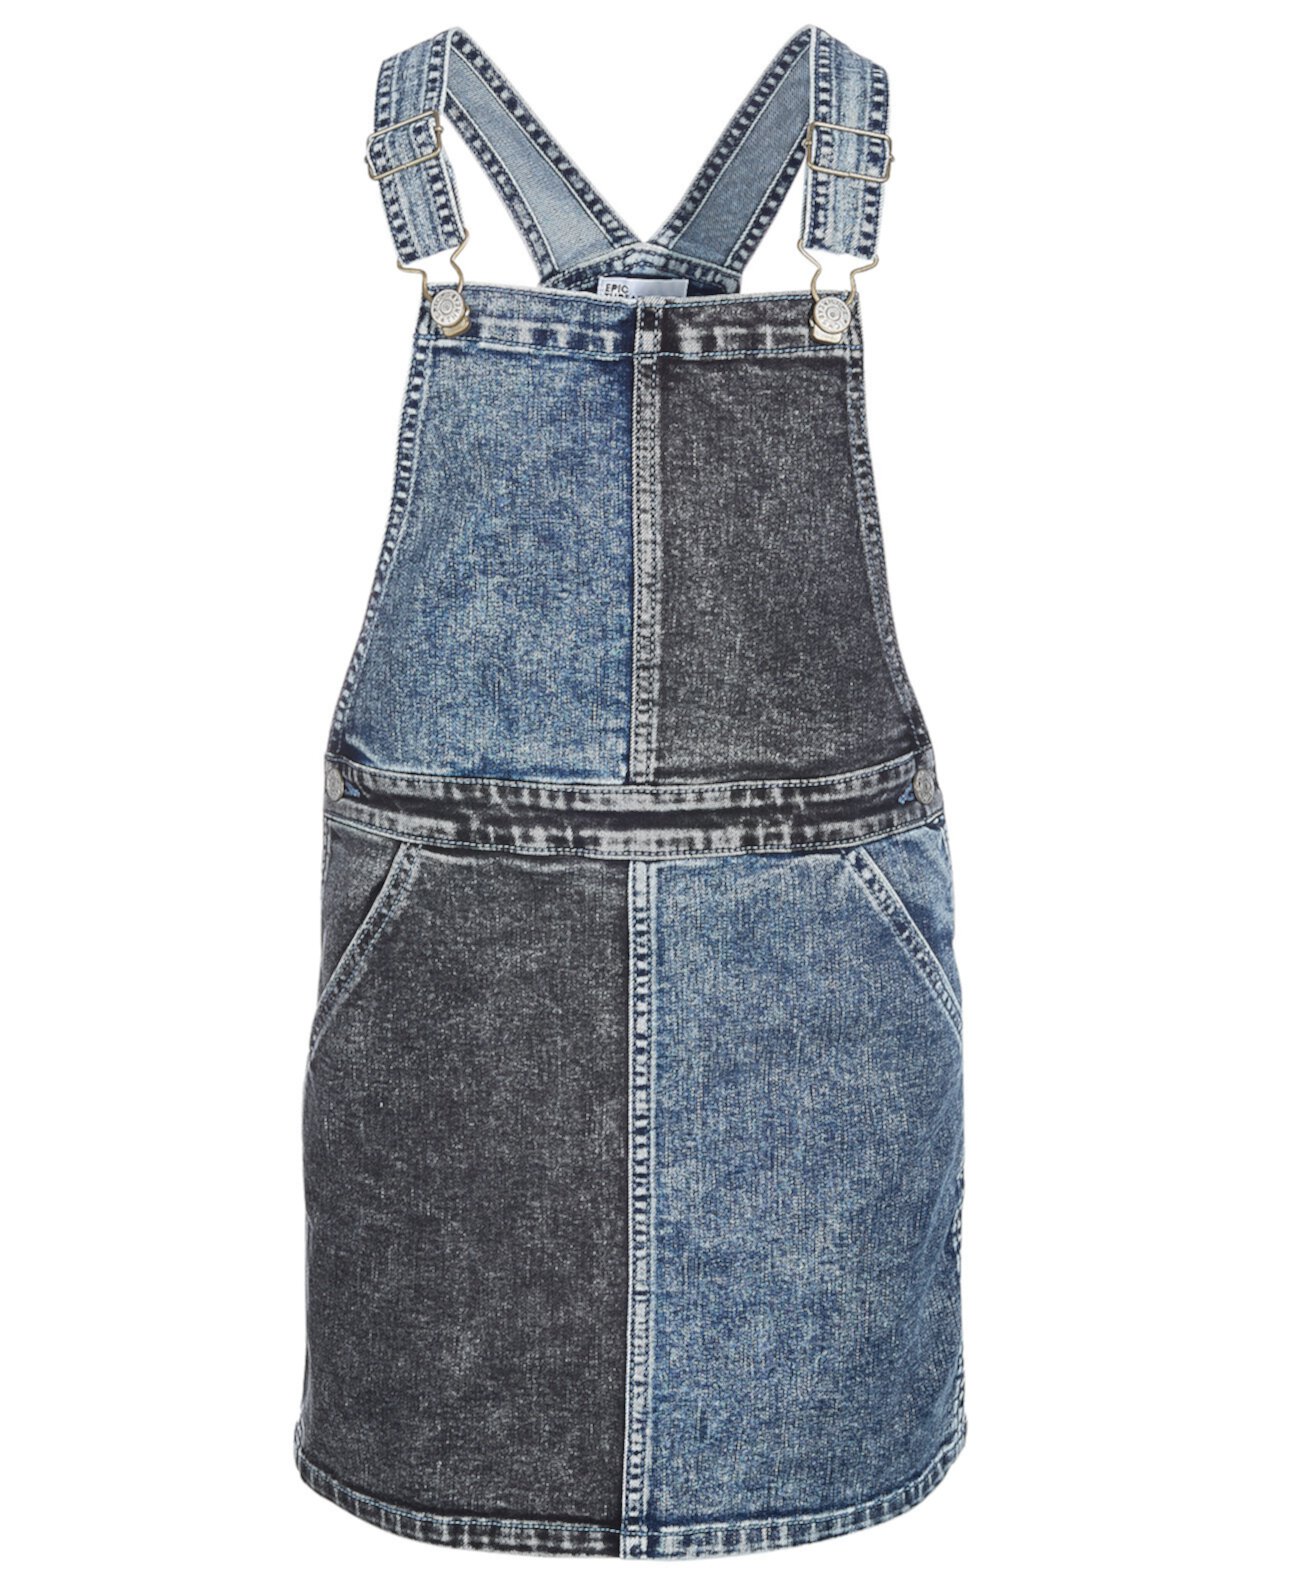 Джинсовая юбка Big Girls Twist, созданная для Macy's Epic Threads